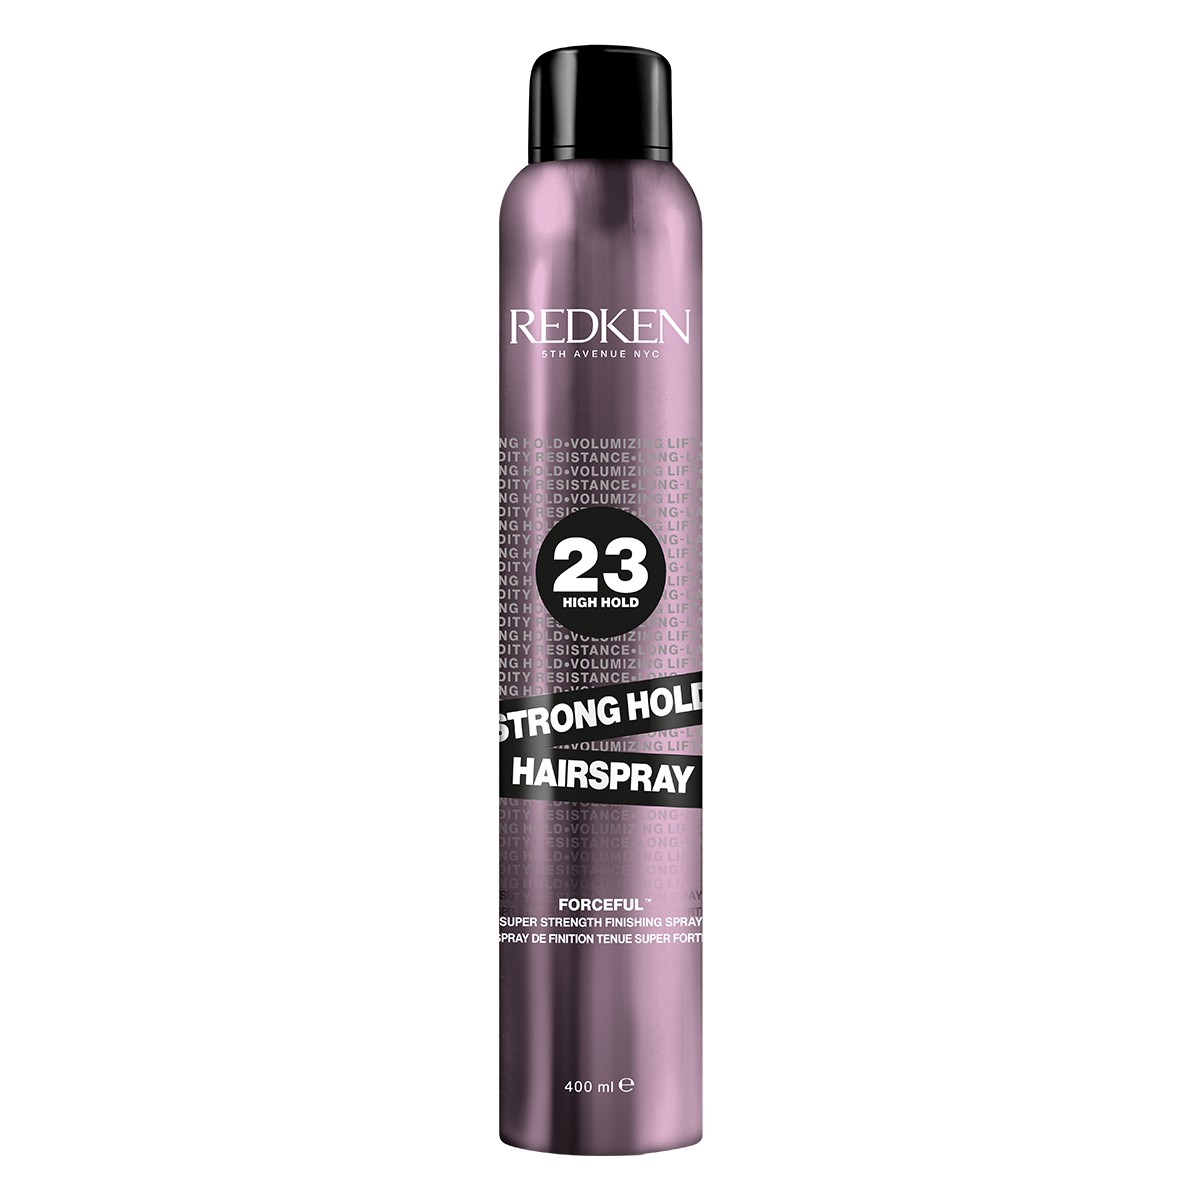 Redken-2022-EU-Hairspray-Strong-Hold-Hairspray-400ml-Ecom-ATF-Packshot-1200×1200